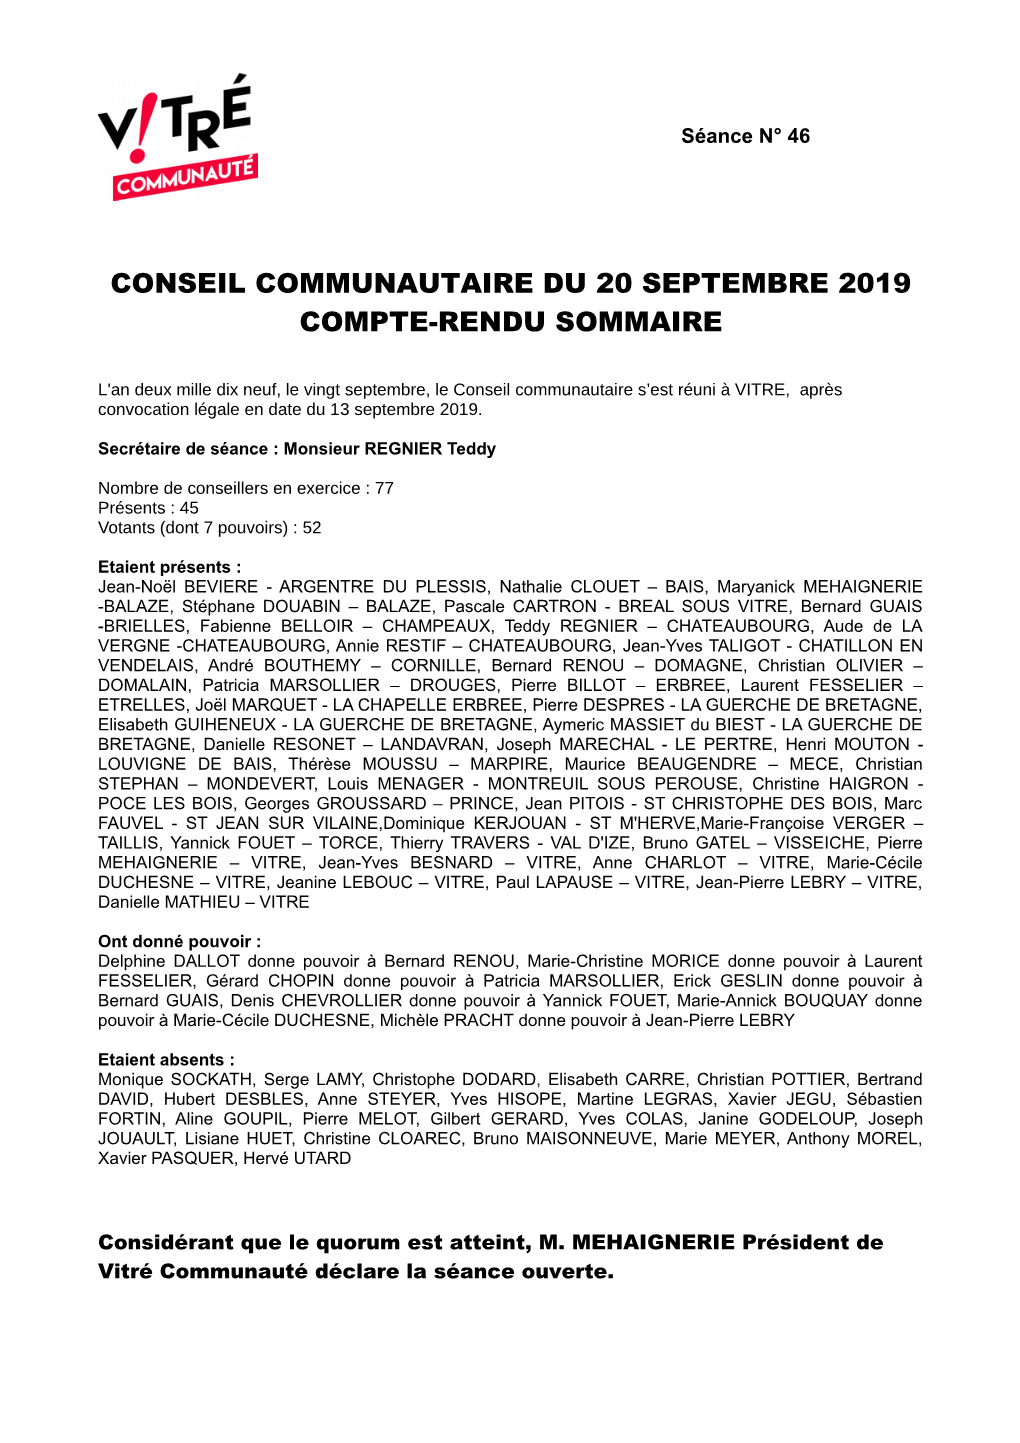 Conseil Communautaire Du 20 Septembre 2019 Compte-Rendu Sommaire